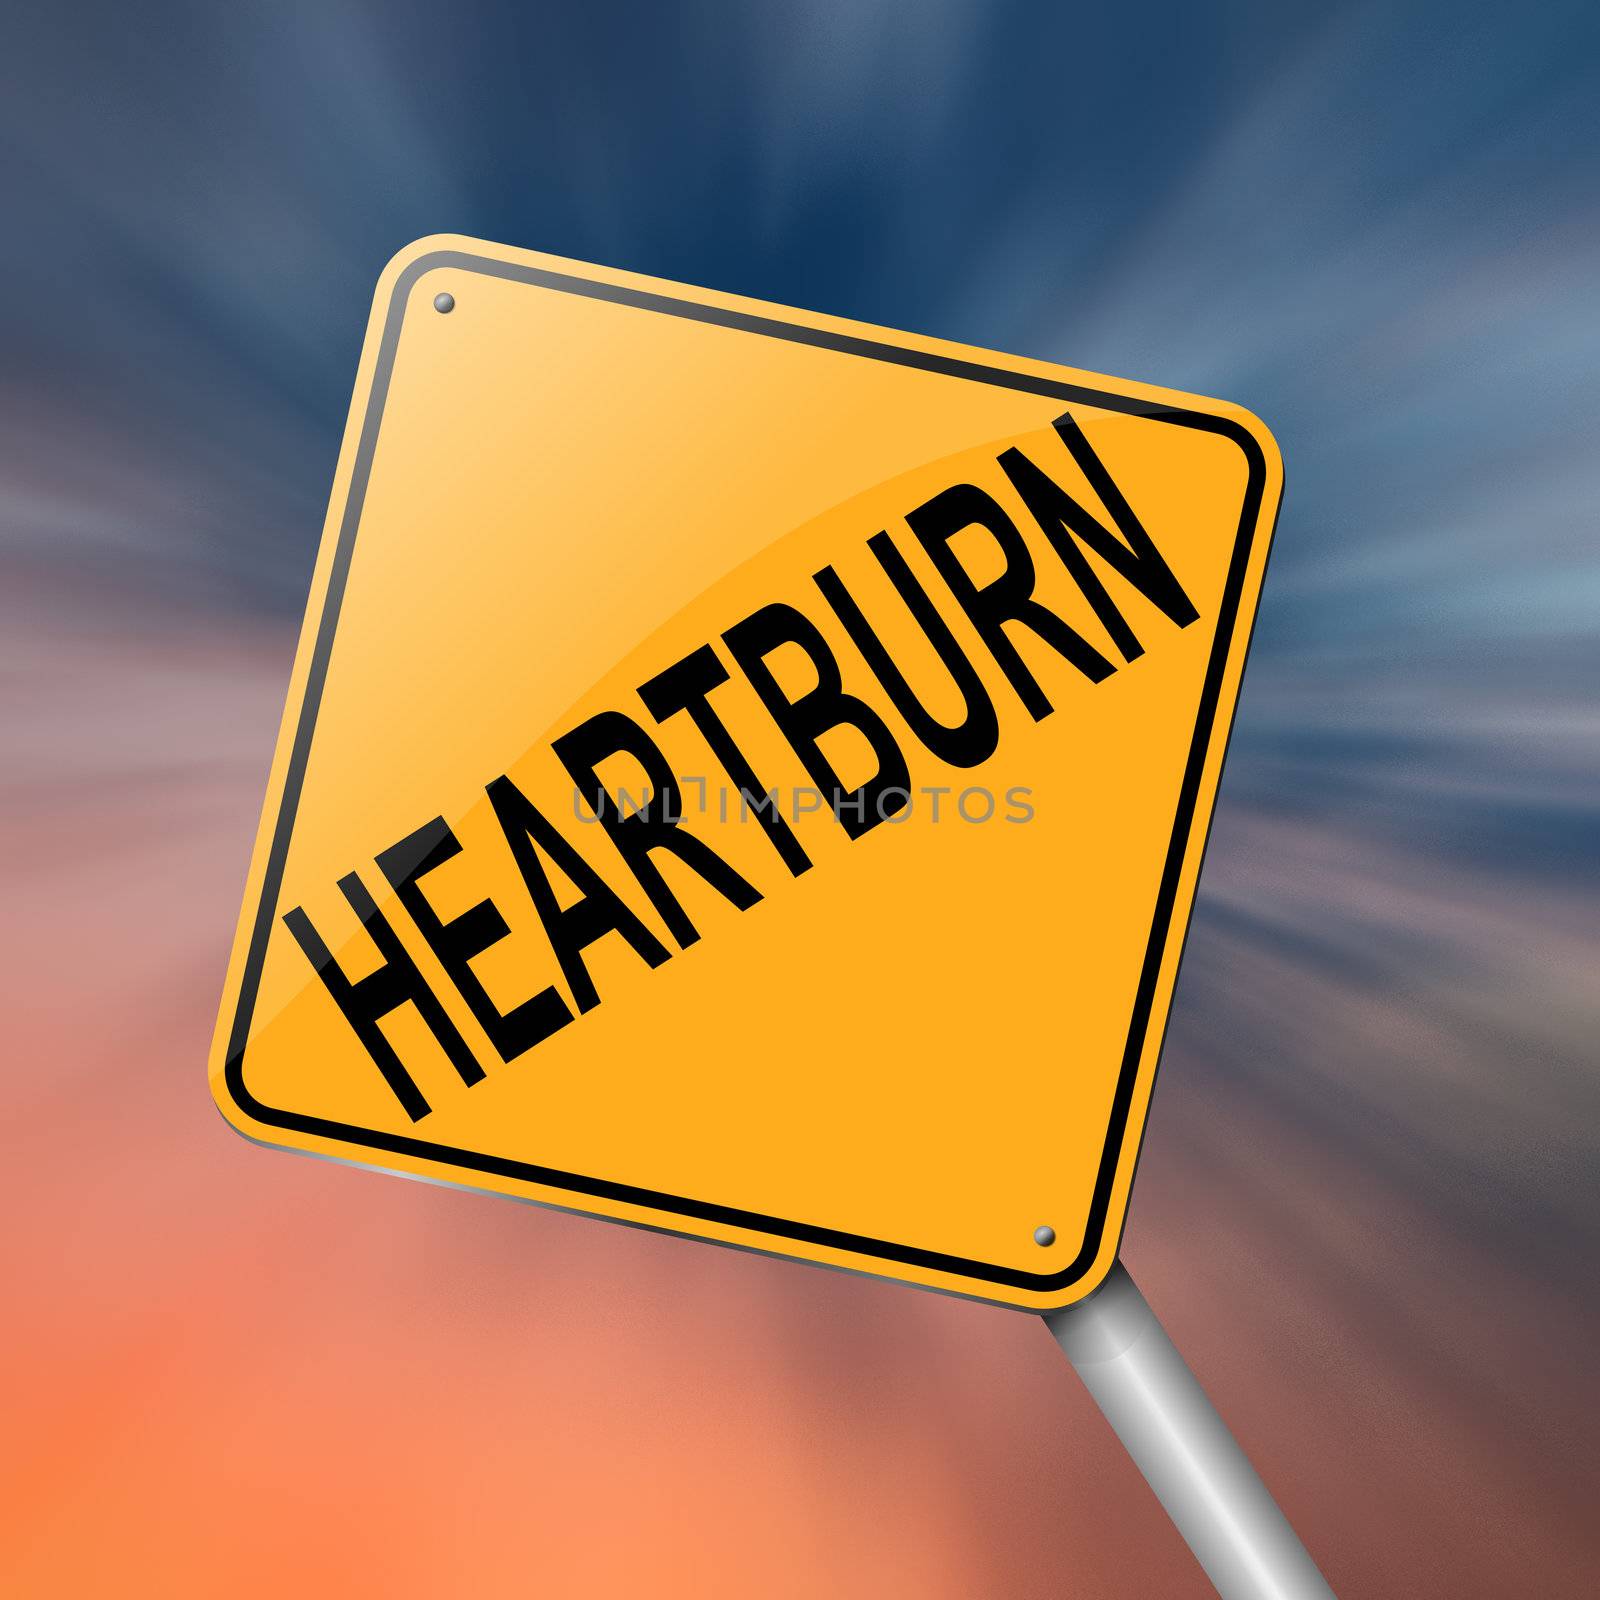 Heartburn concept. by 72soul